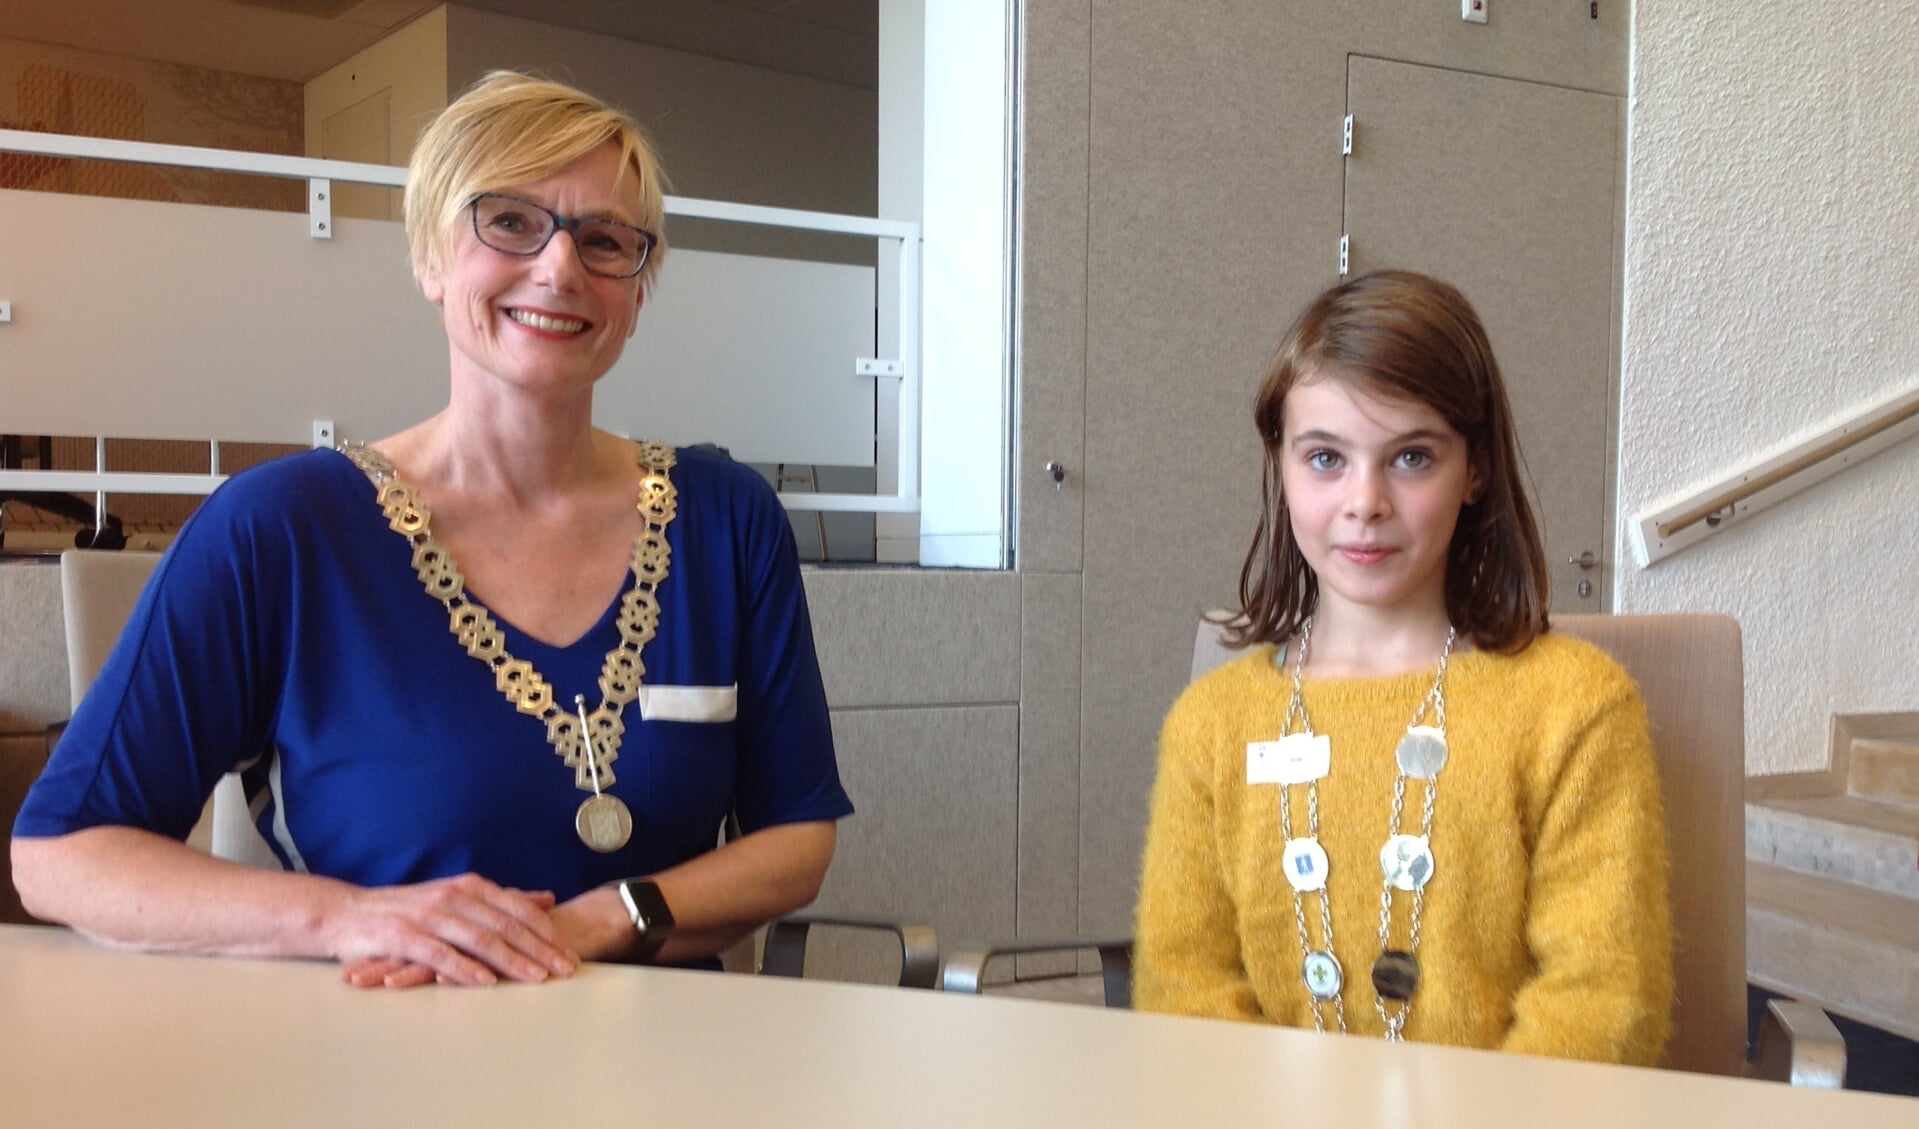 Burgemeester Marianne Besselink met de eerste jeugdburgemeester van Bronckhorst: Evi Otten uit Halle-Heide. Foto: Mirjam Rensink